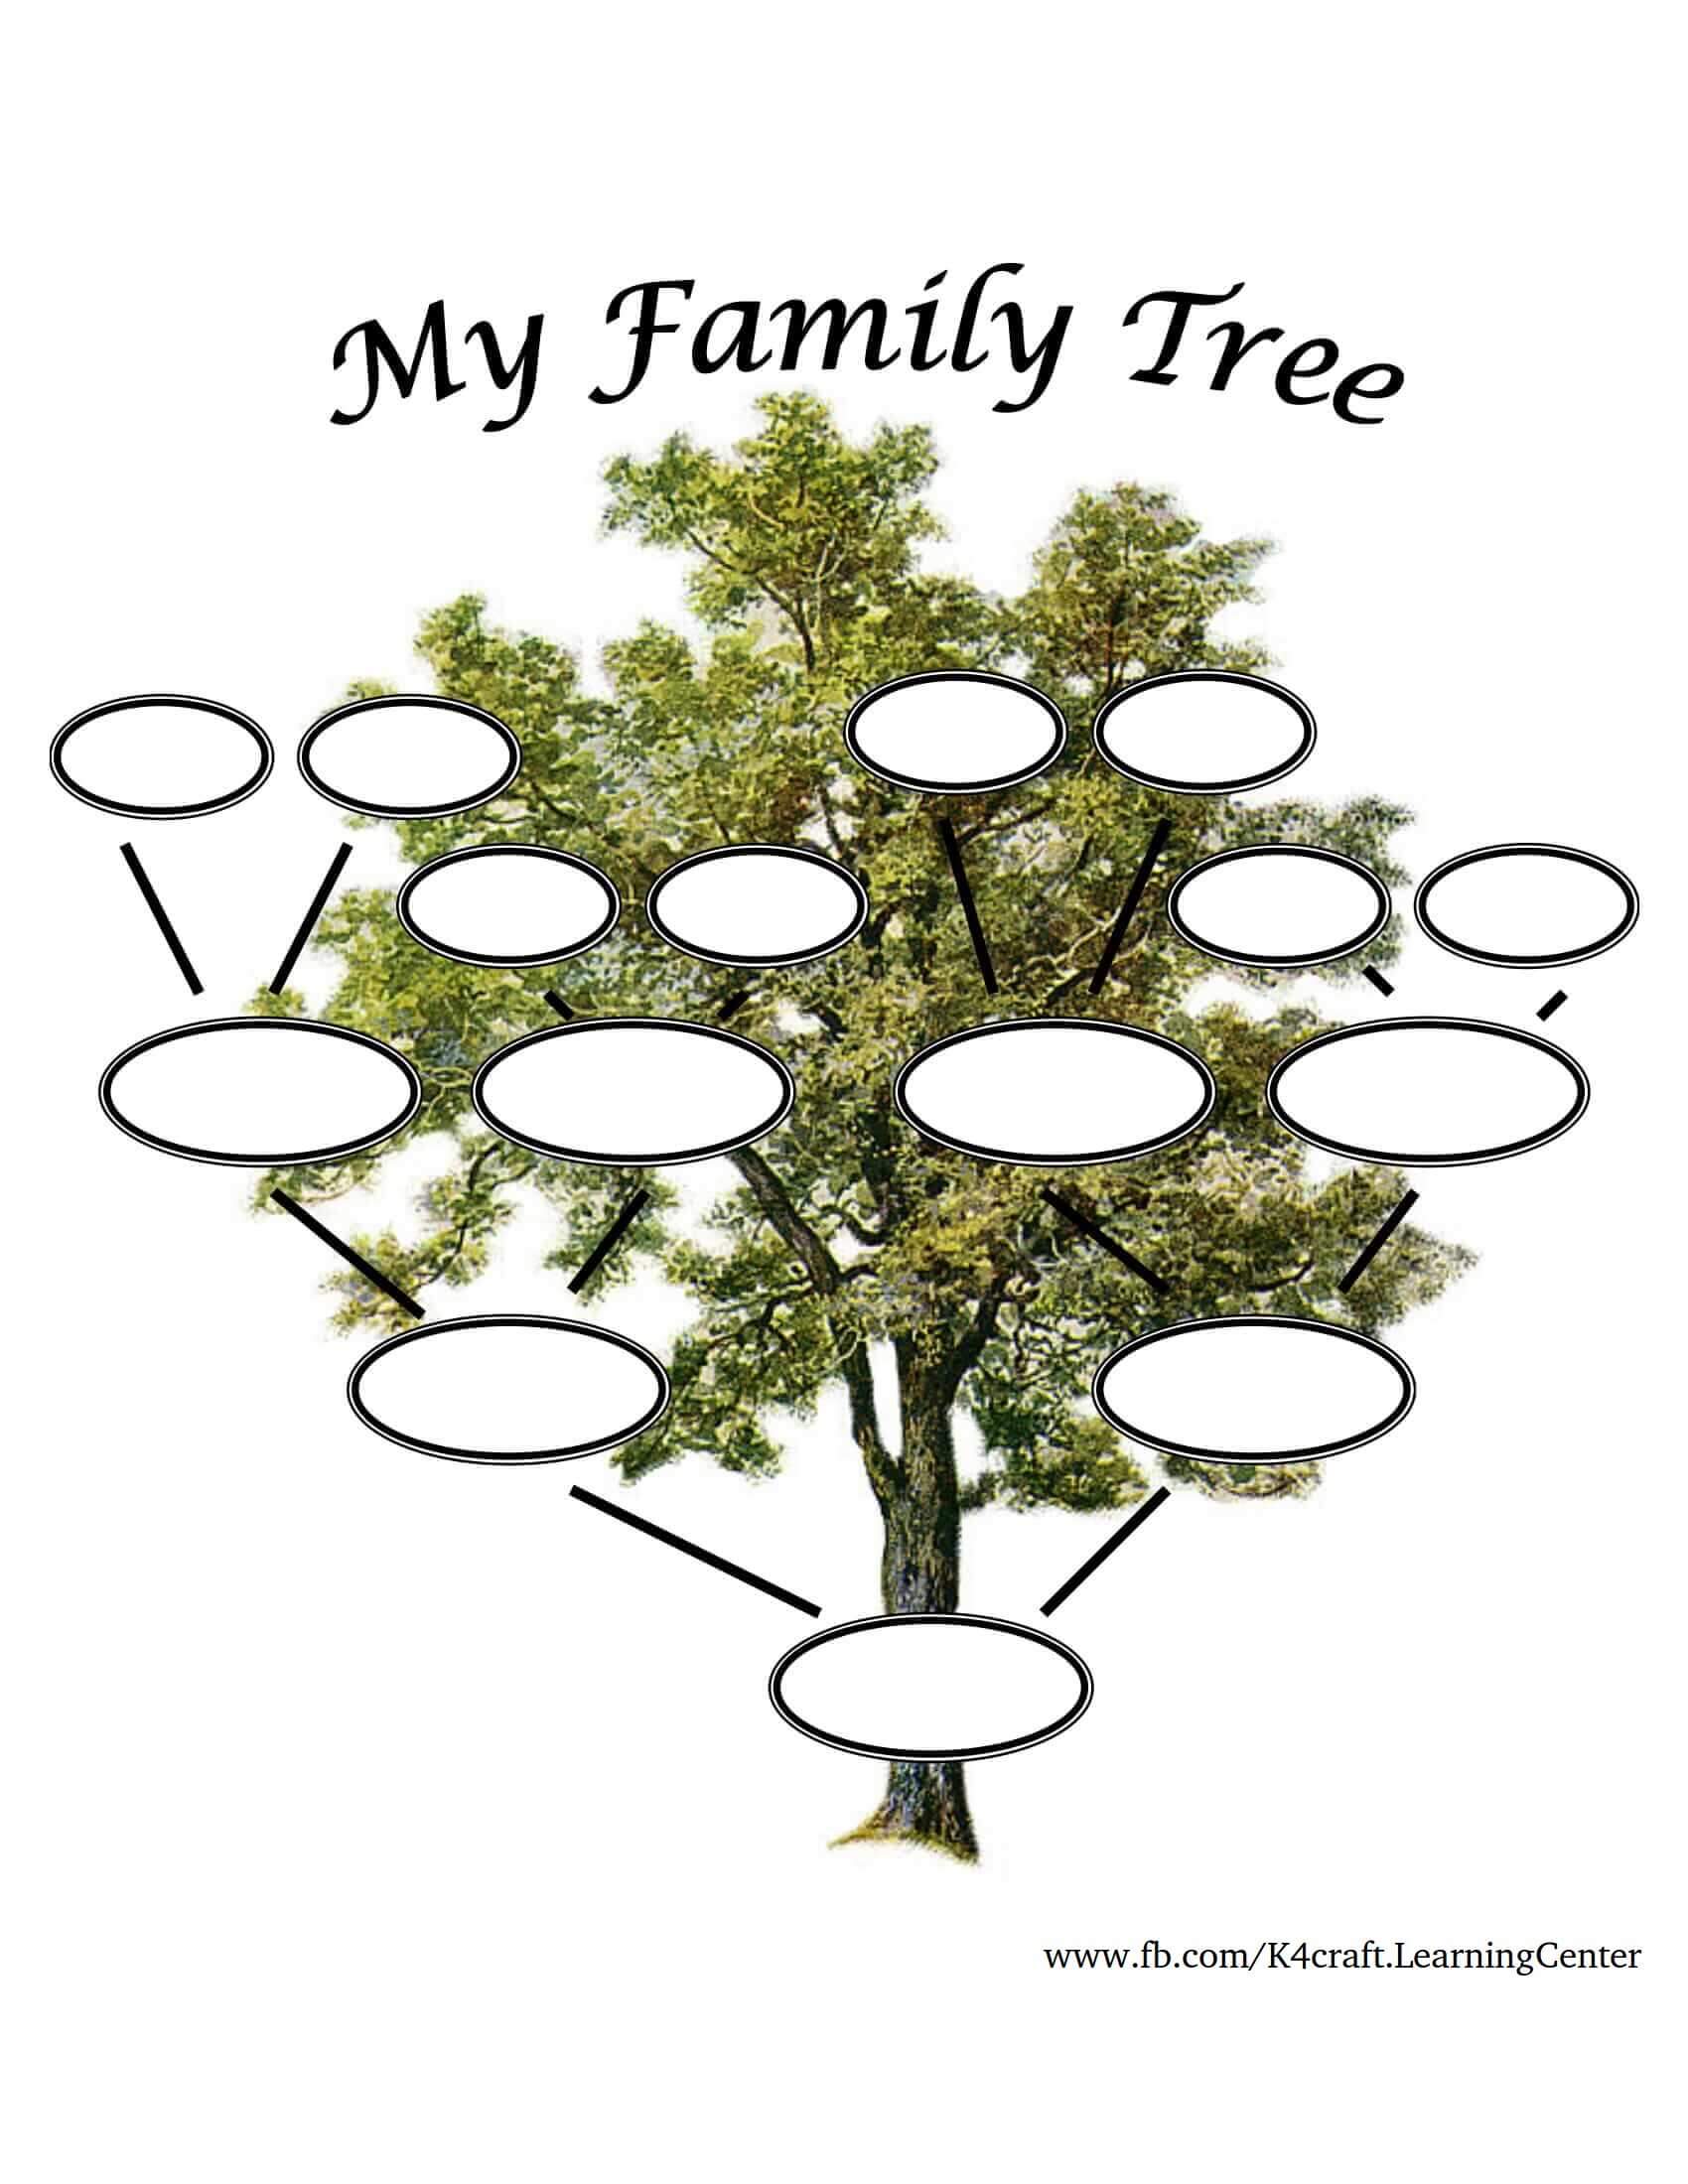 Генеалогическое дерево шаблон для заполнения